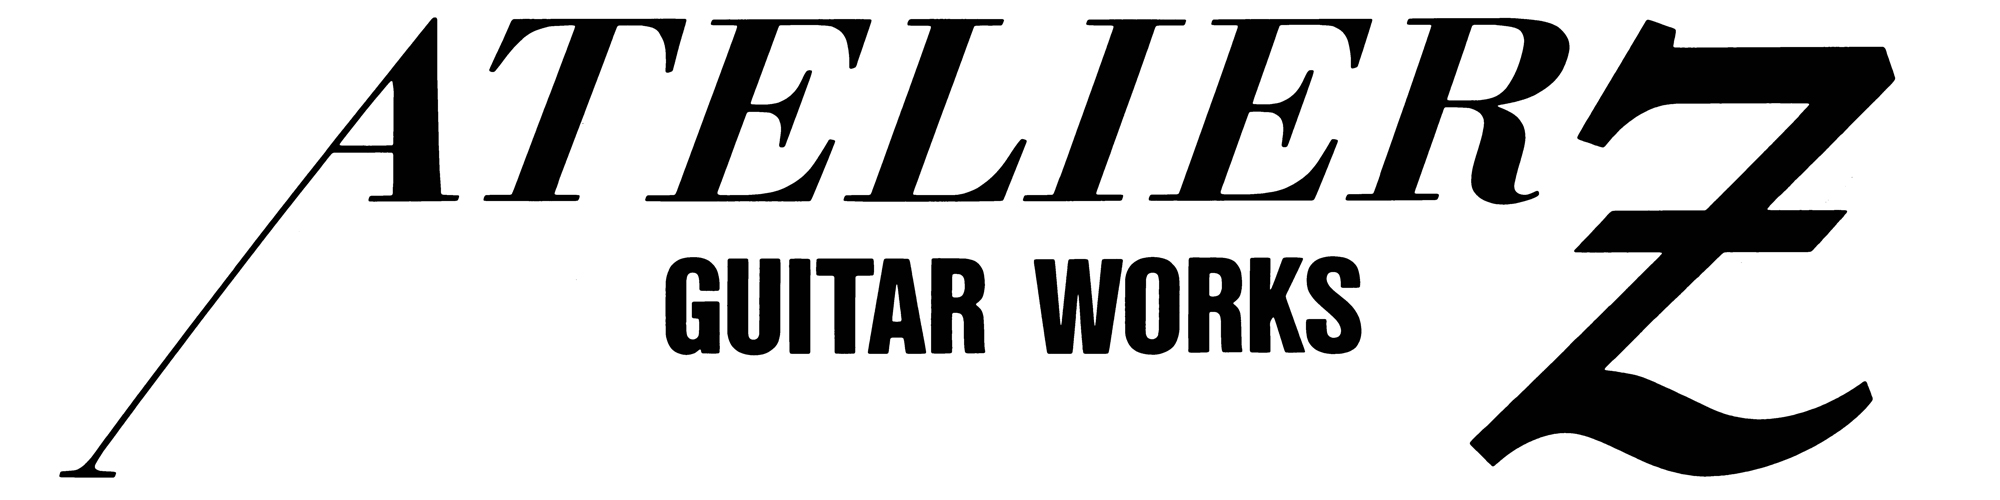 ATELIER Z Guitar Works